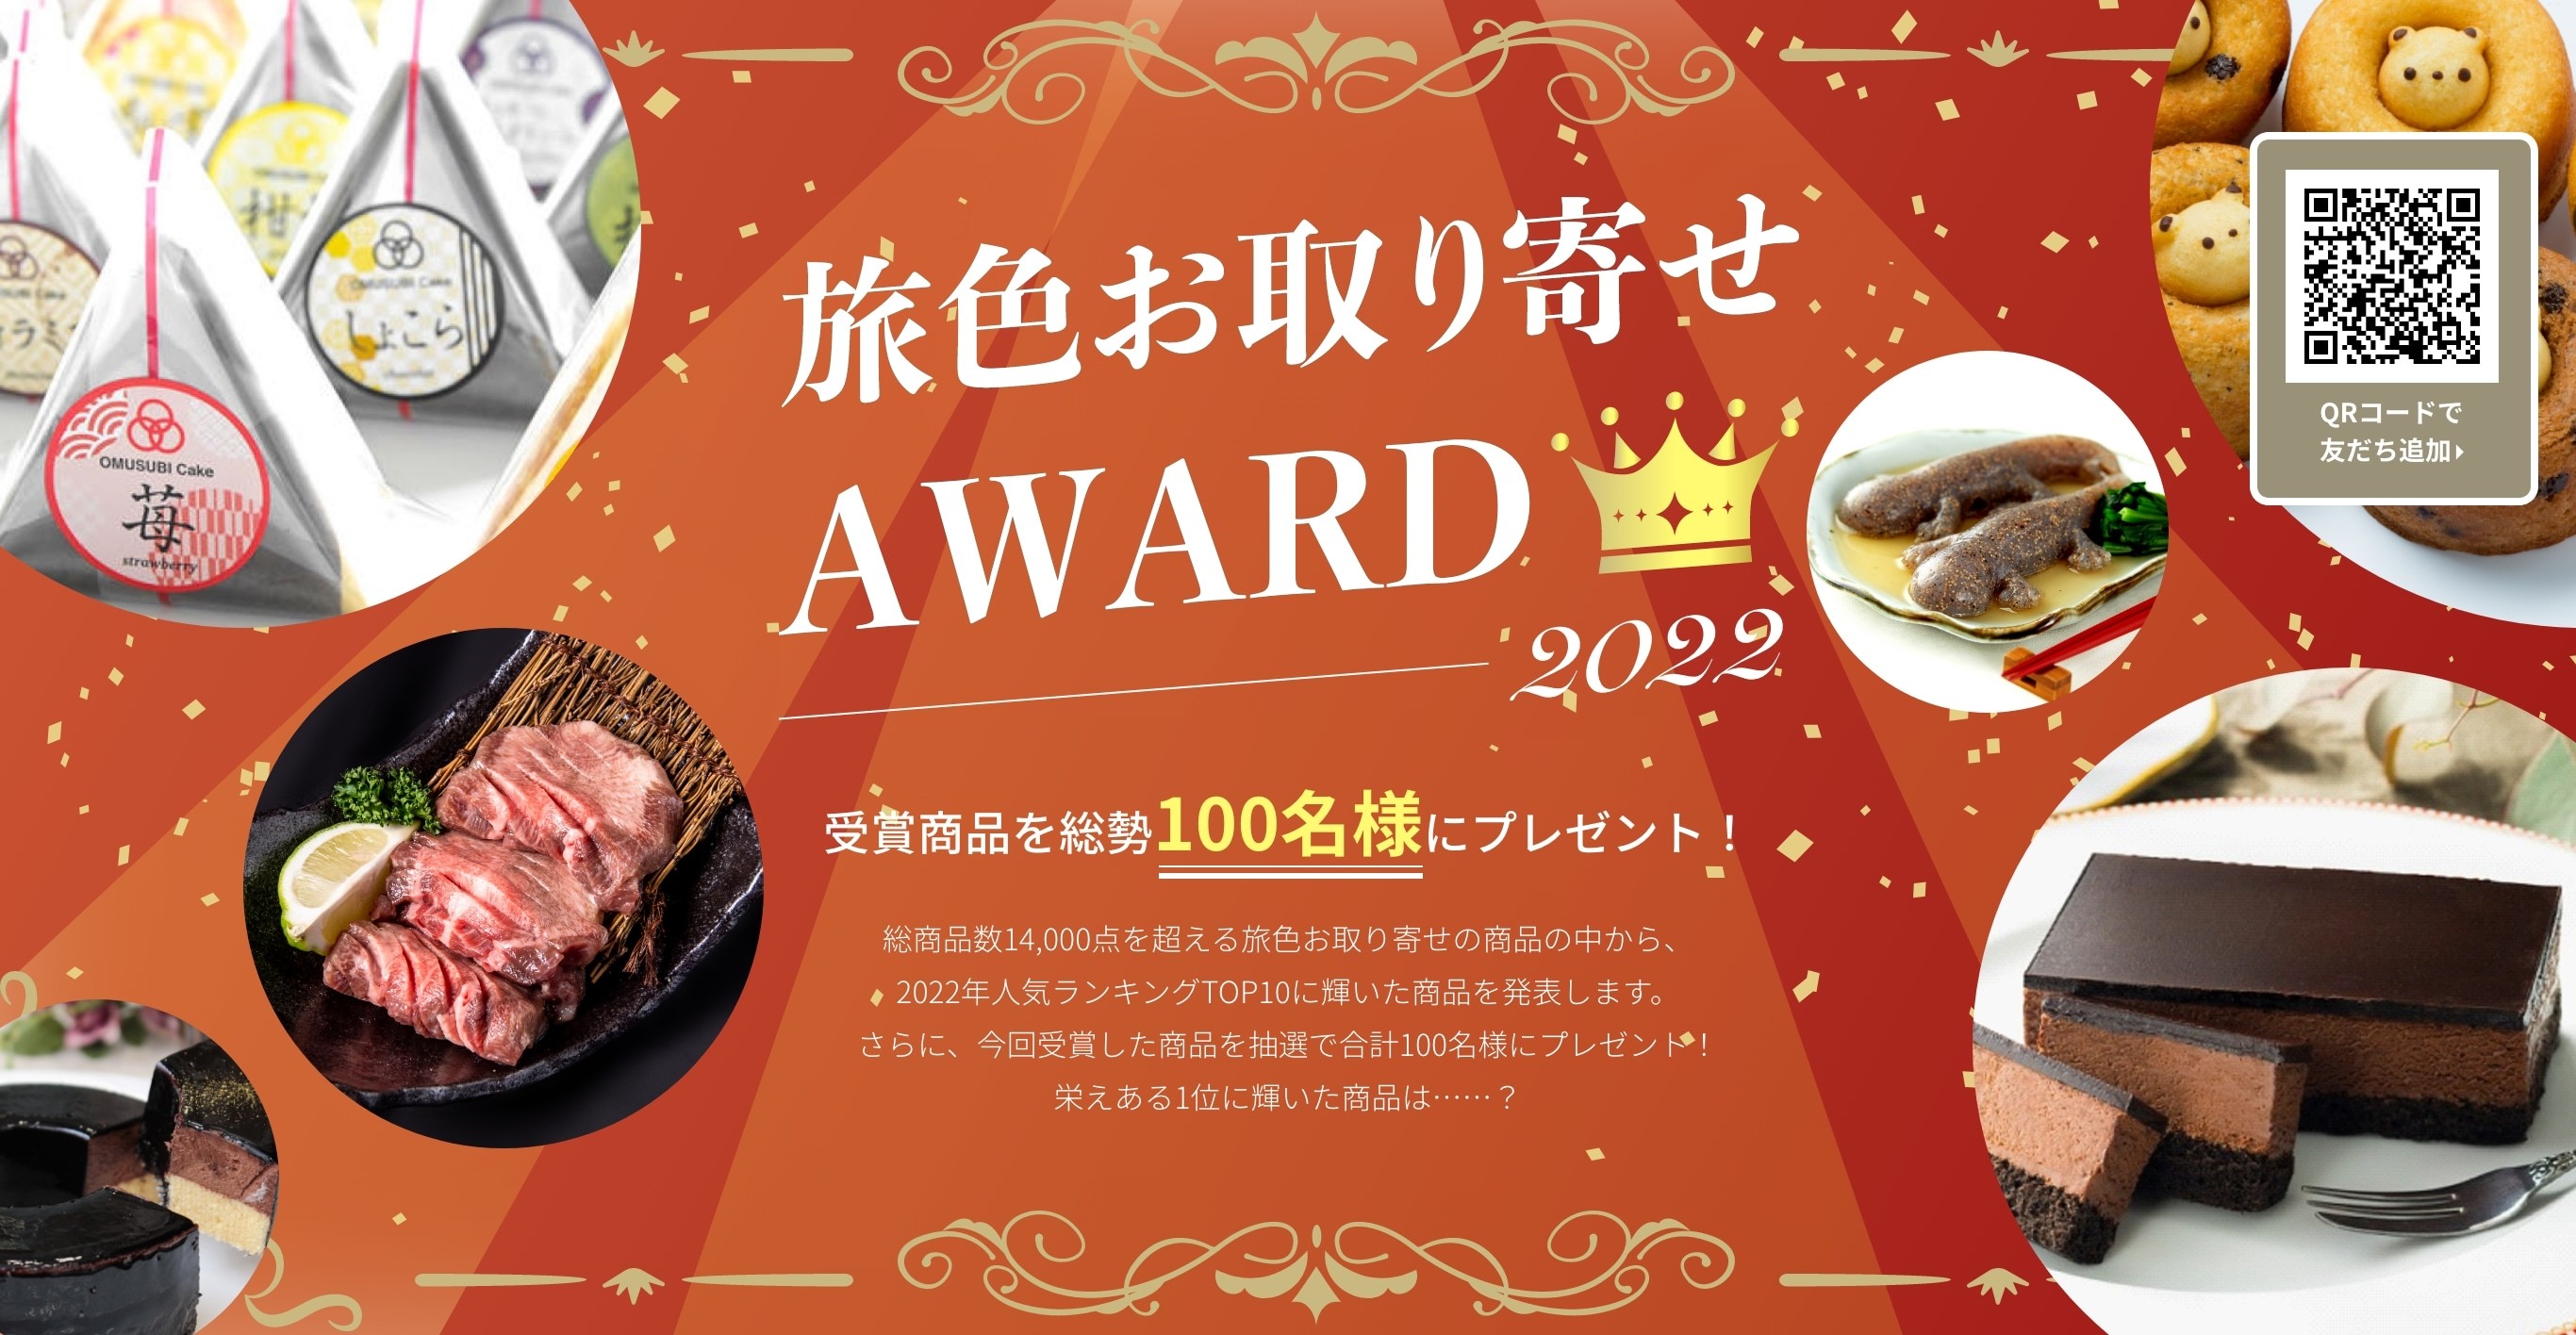 人気第1位は大阪発のフォトジェニックな新感覚スイーツ「旅色お取り寄せAWARD2022」を発表